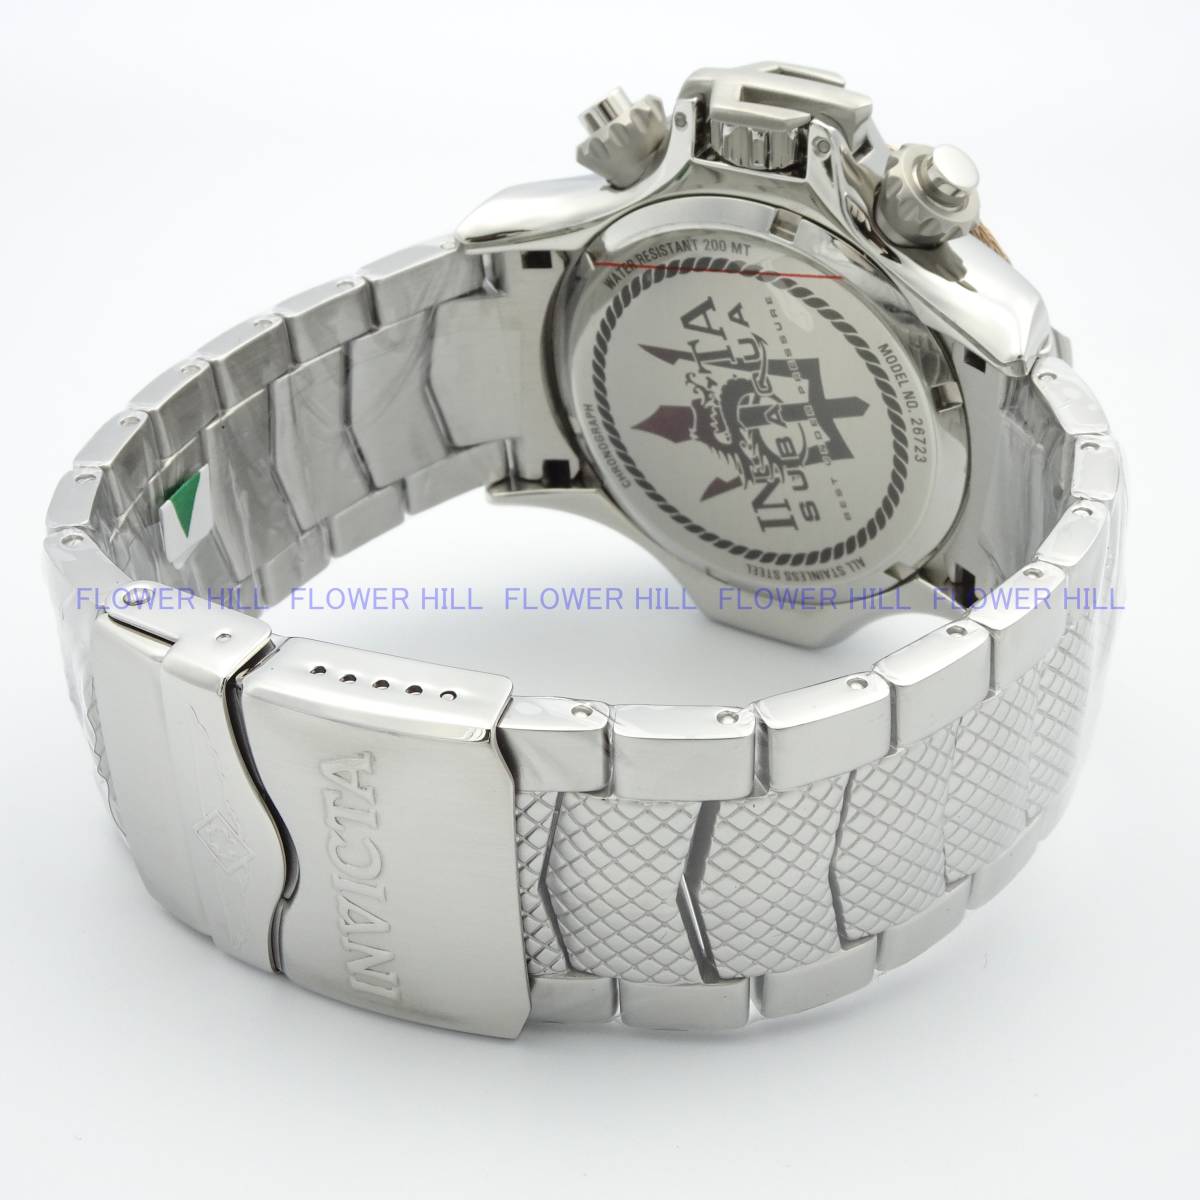 【新品・送料無料】インビクタ INVICTA 腕時計 メンズ クォーツ スイスムーブ ブラック・スチール SUBAQUA 26723 メタルバンド